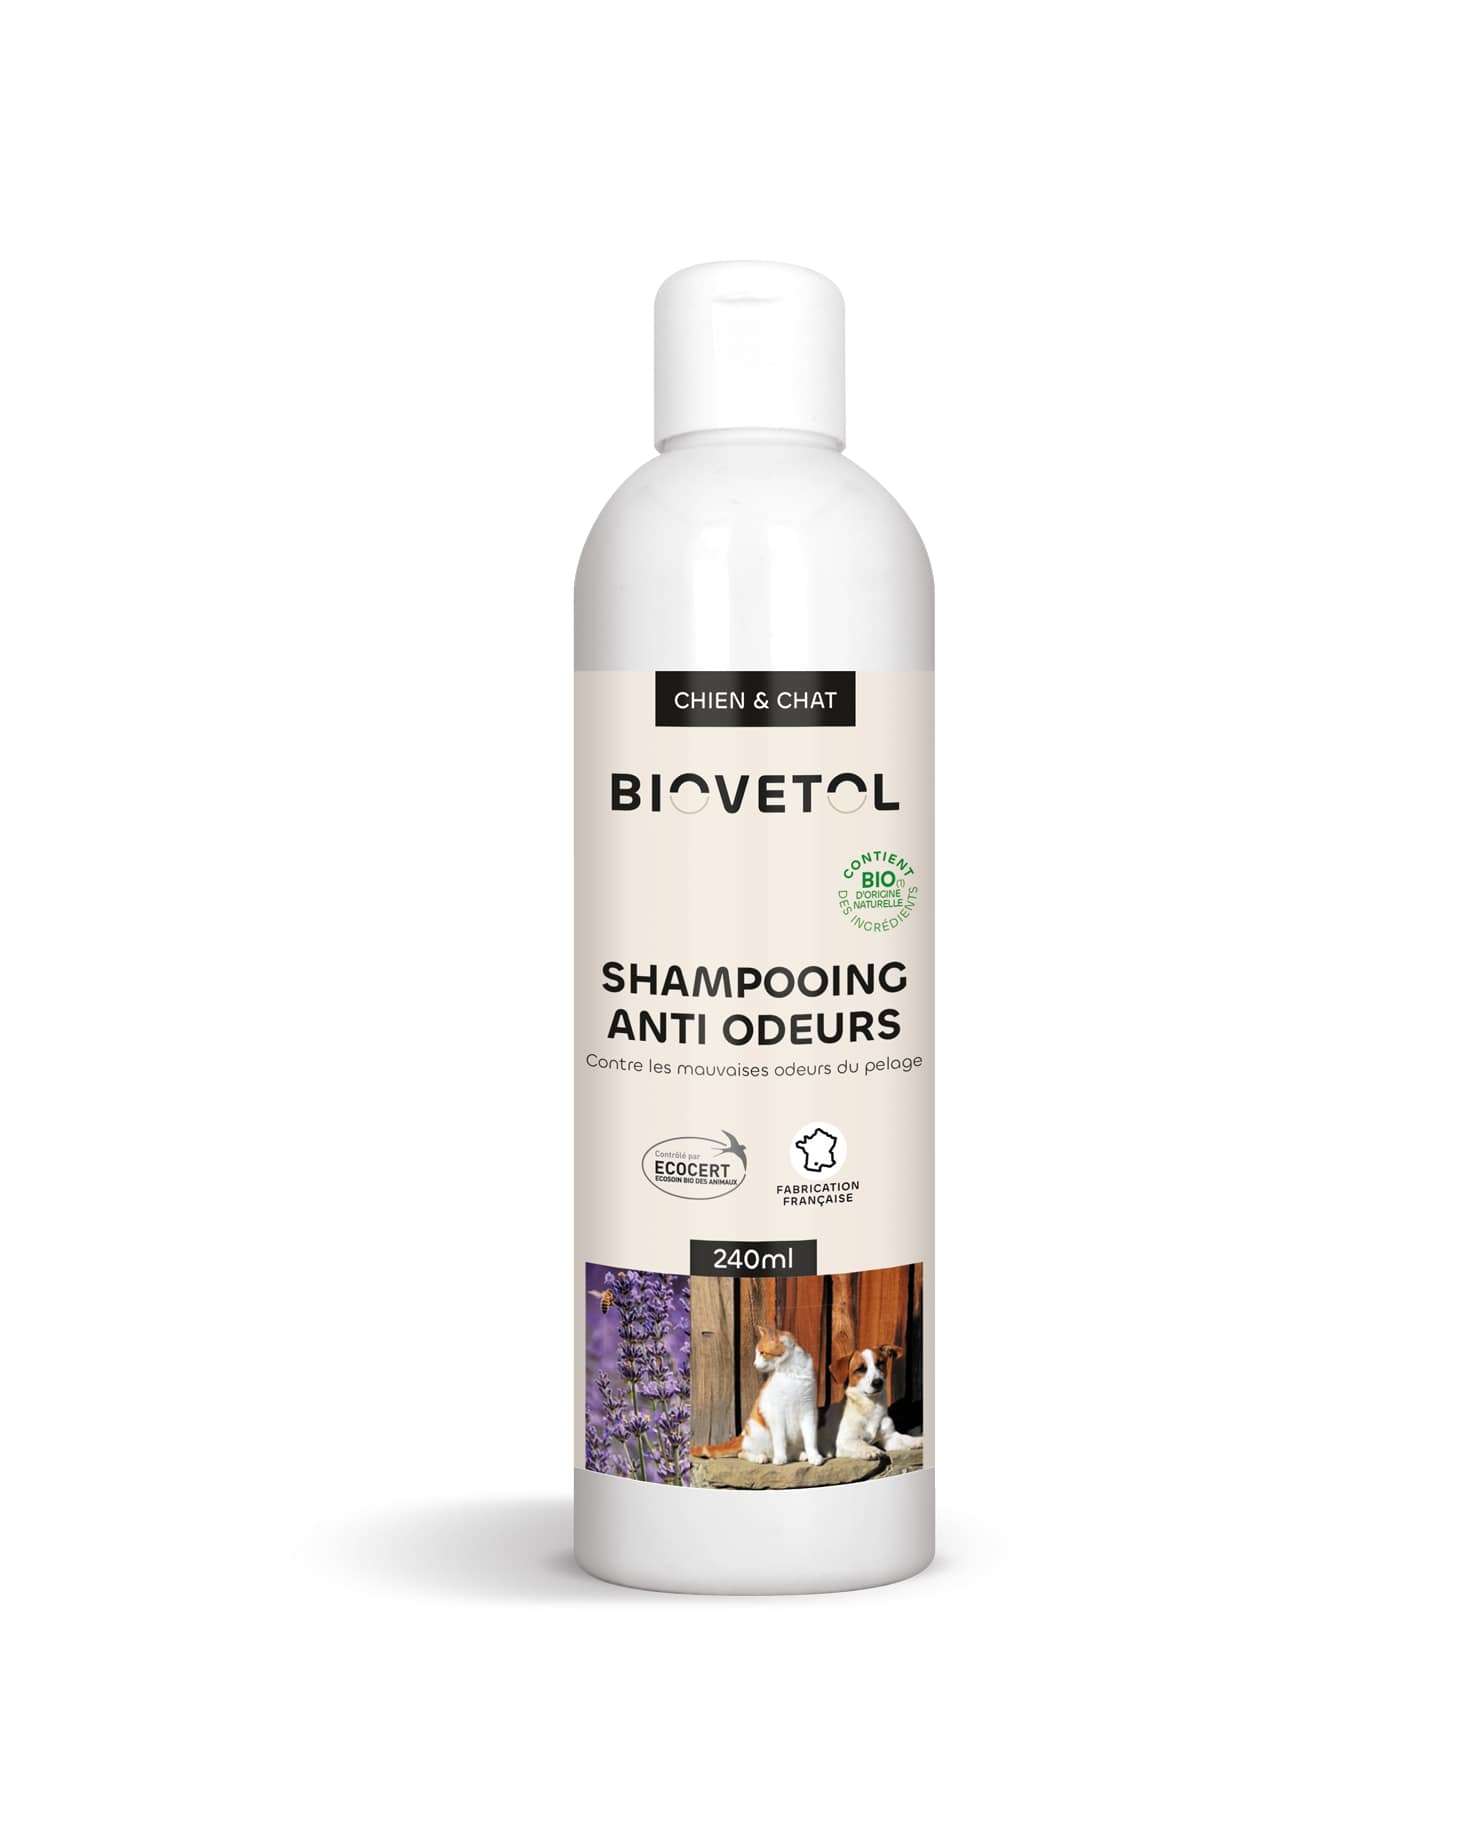 Shampooing anti-odeur bio - 240ml